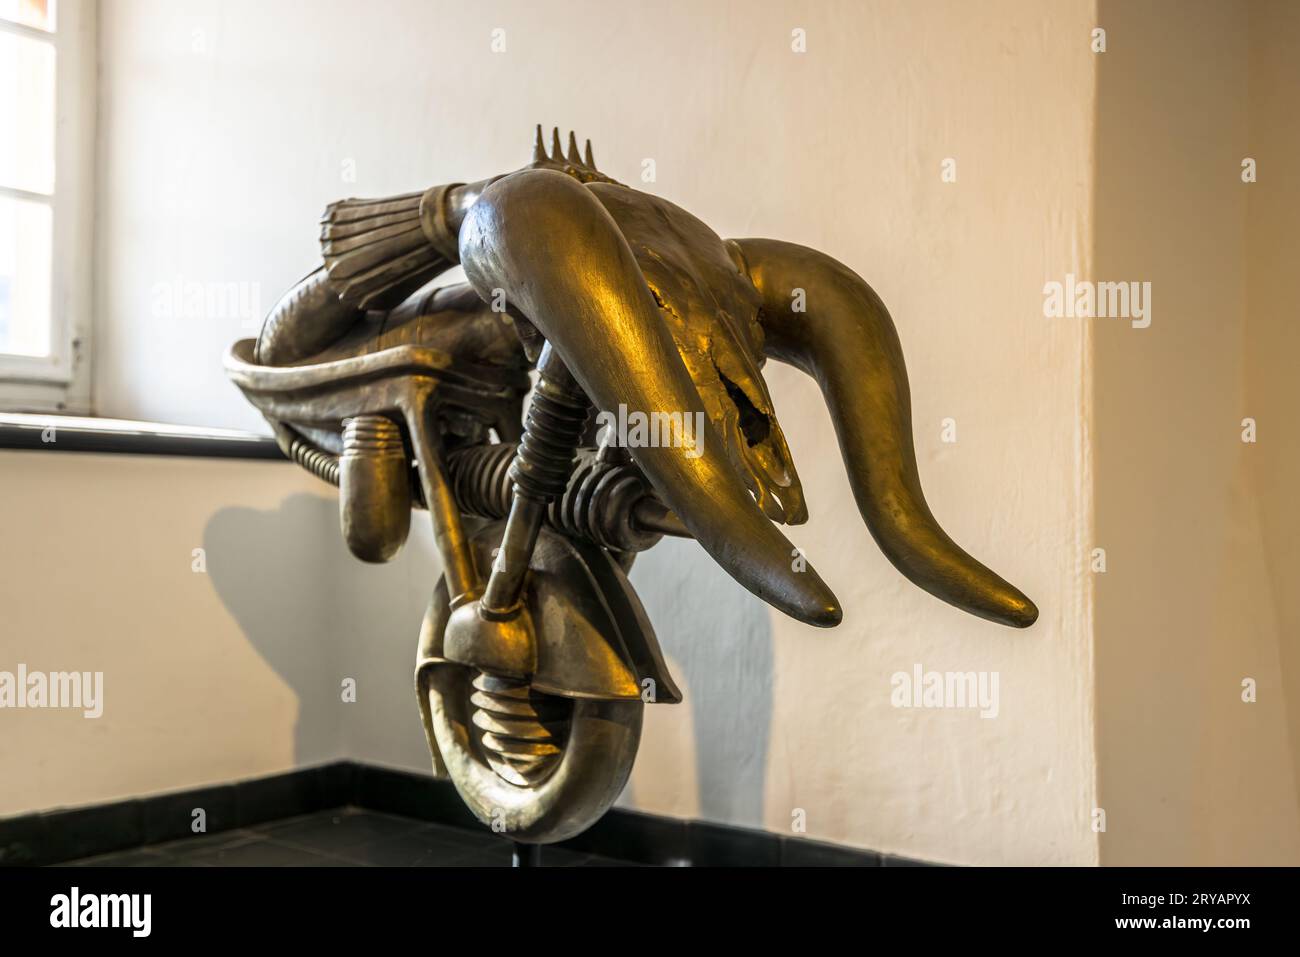 Sculpture de Hans-Ruedi Giger dans le HR Giger Museum à offert Château Germain à Gruyères. HR Giger Museum à Épagny Greyerz, Suisse Banque D'Images